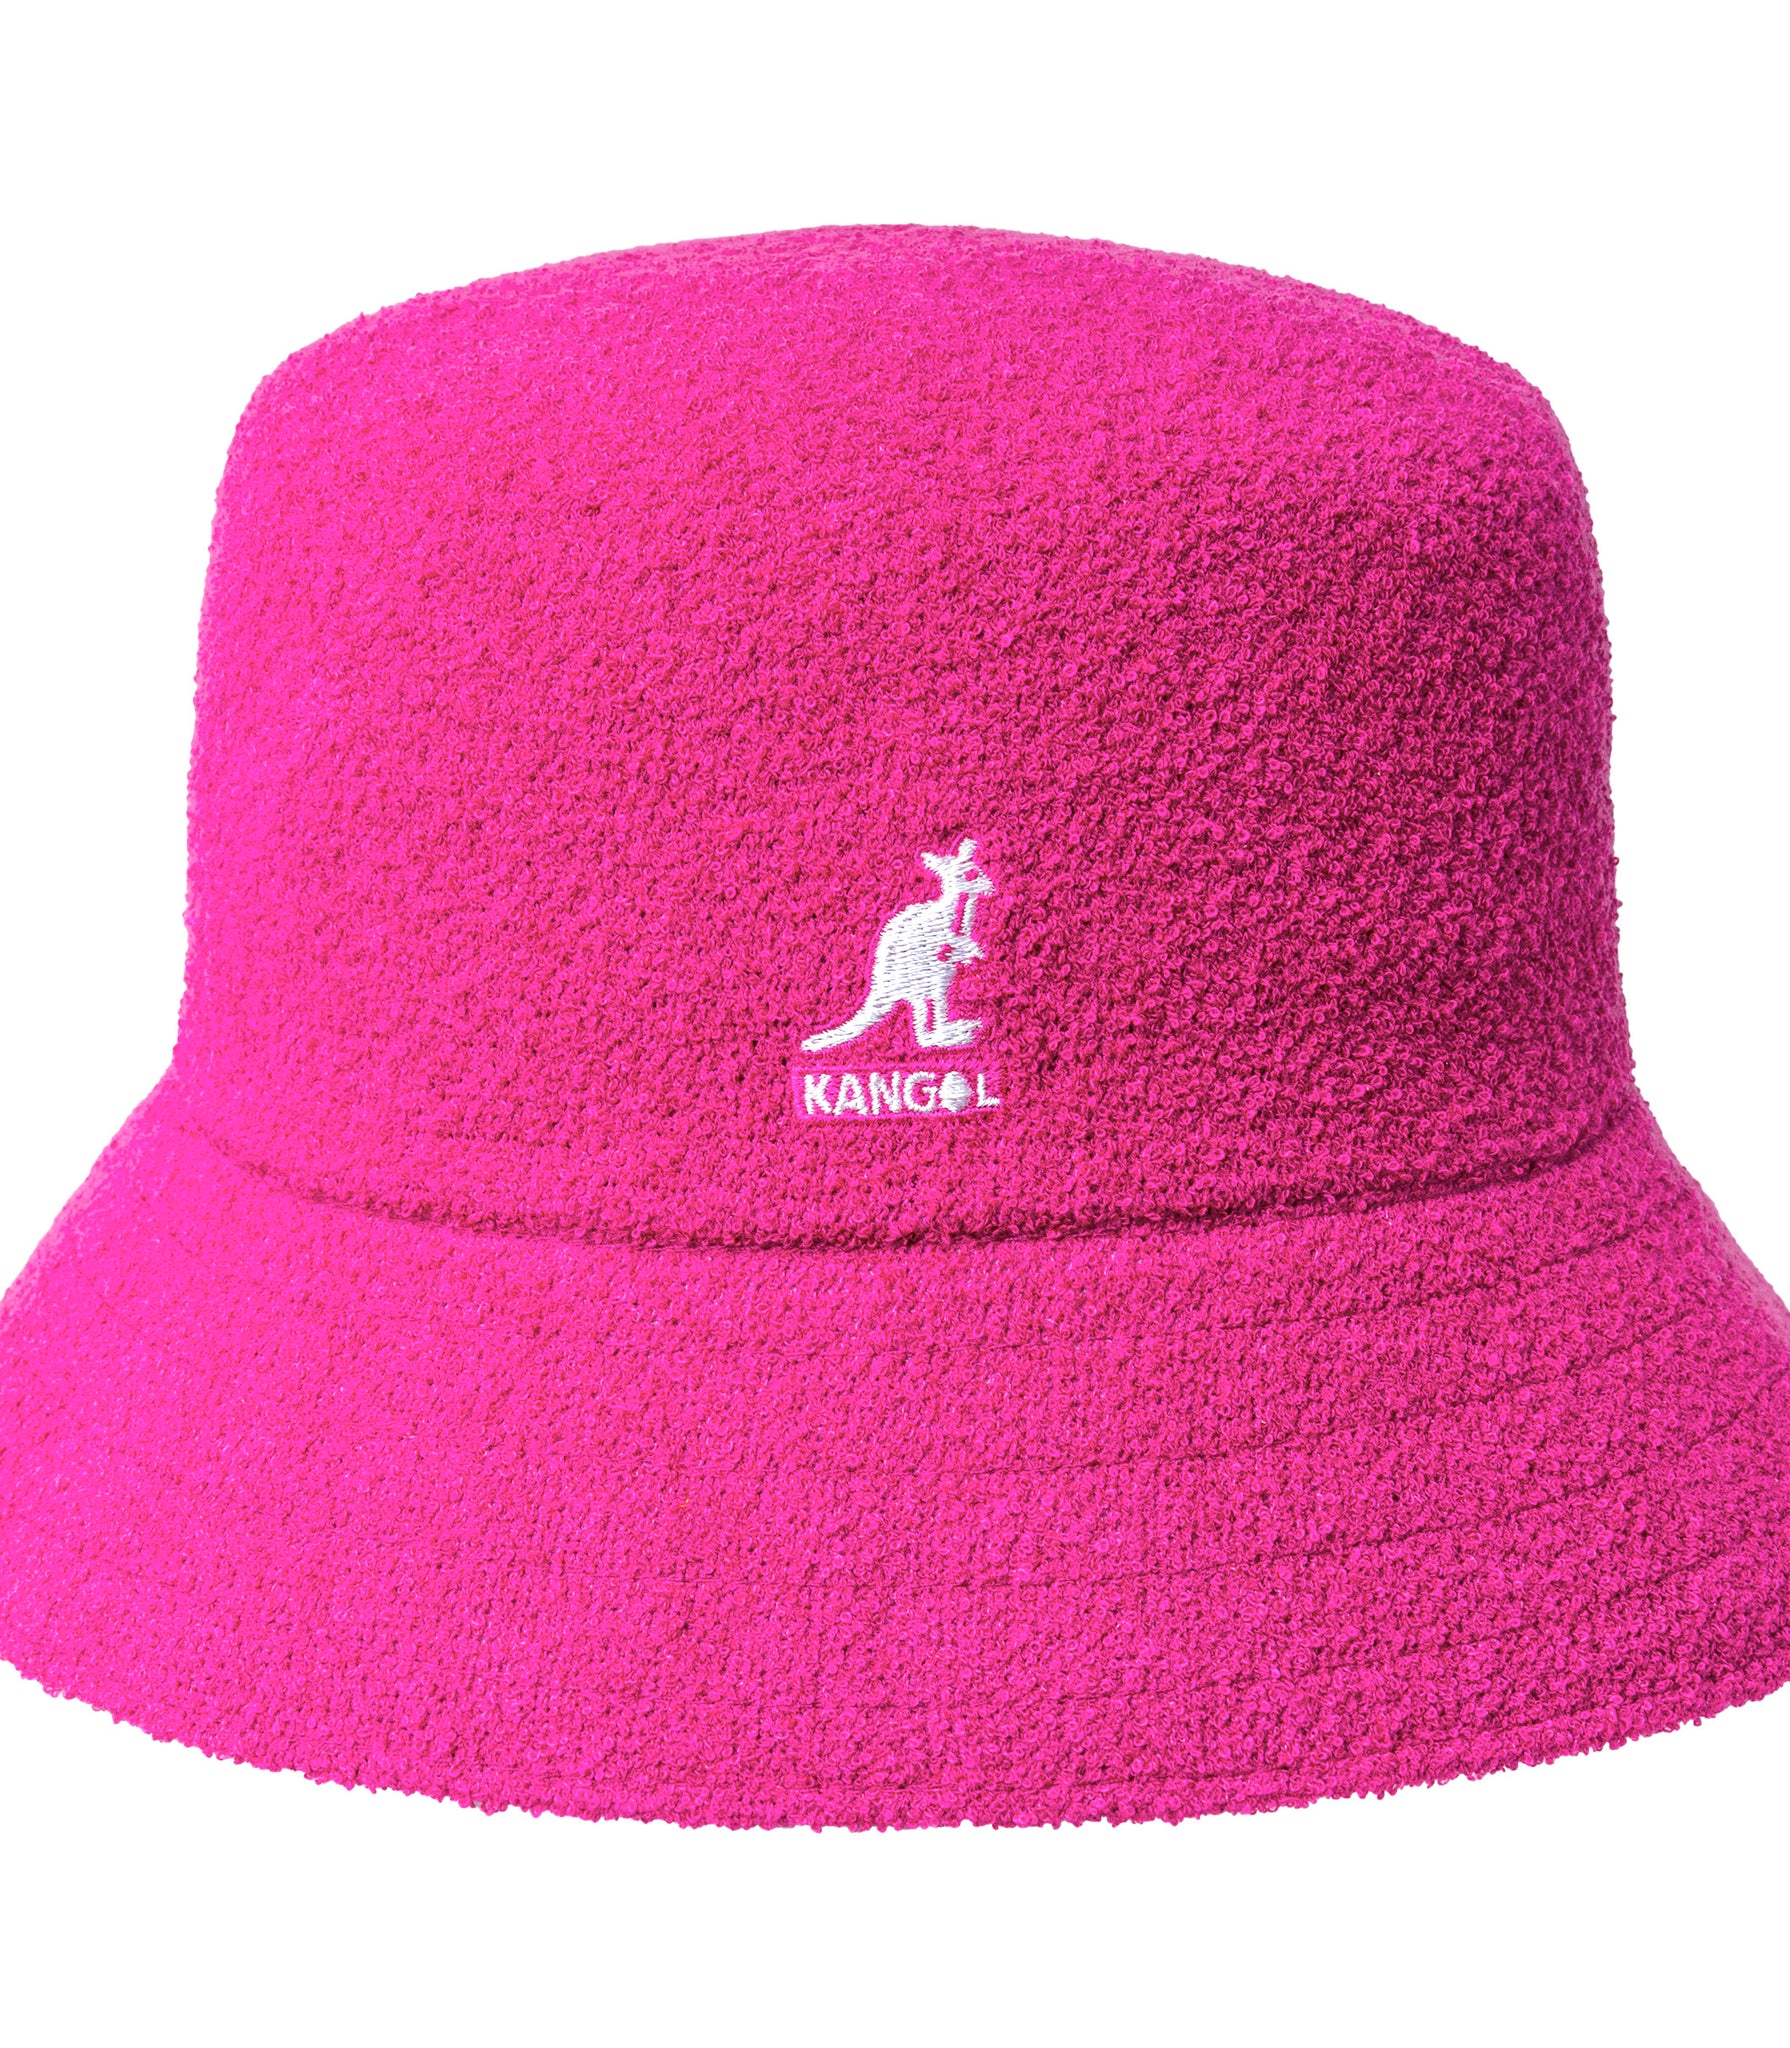 Kangol Bermuda Bucket Hat In Fuchsia Sponge